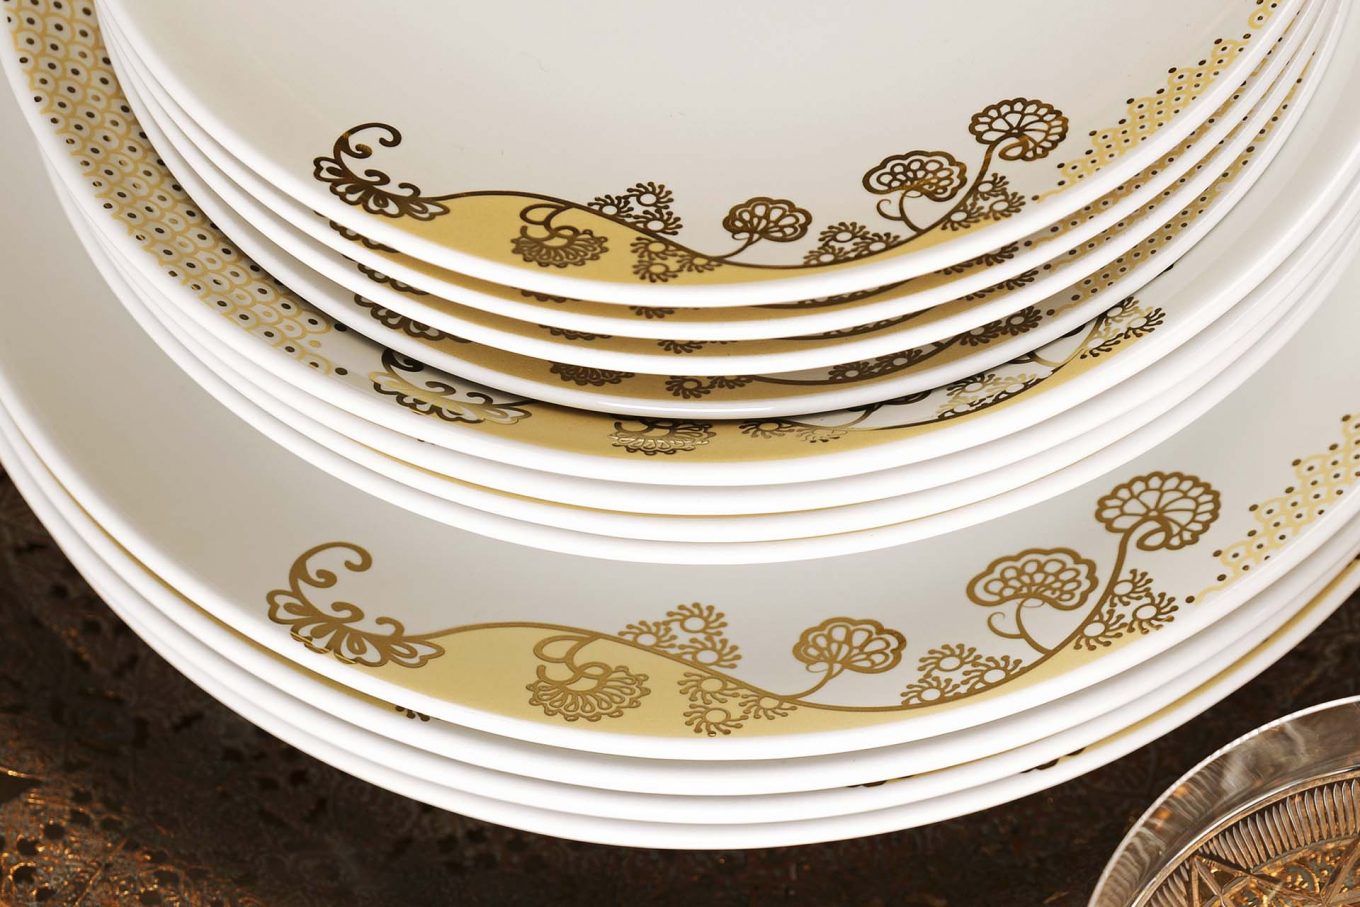 Imagem: A decoração da coleção Coup Golden tem desenhos delicados e aposta no contraste entre duas texturas de ouro: fosca e brilhante.